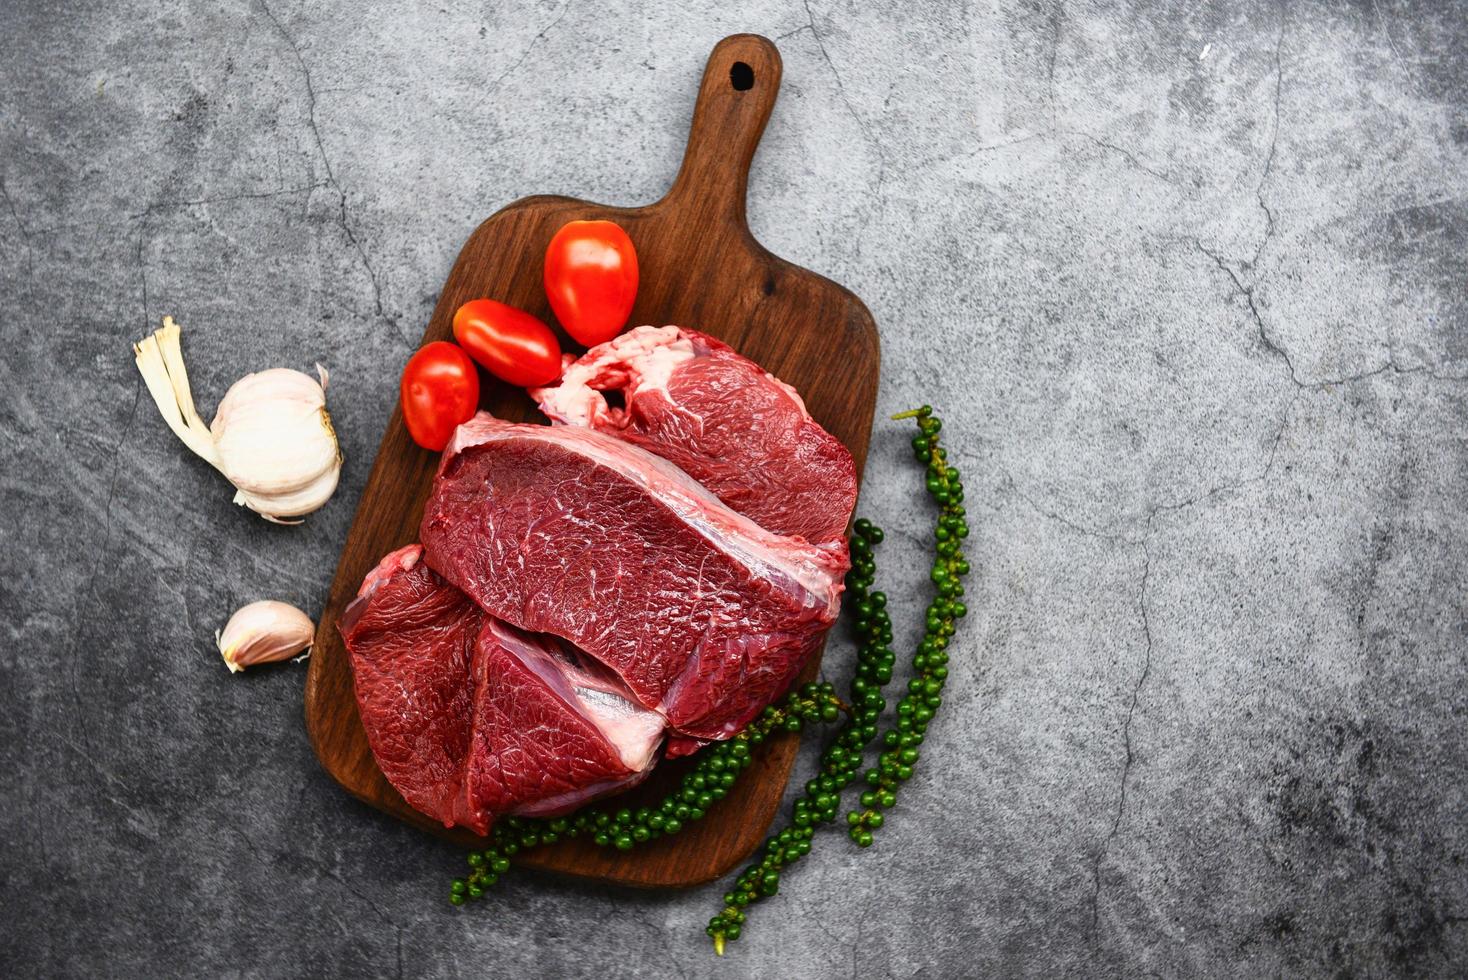 vers rundvlees dierlijk eiwit - rauw rundvlees op houten snijplank op de keukentafel voor het koken van biefstuk geroosterd of gegrild met ingrediënten kruiden en specerijen foto